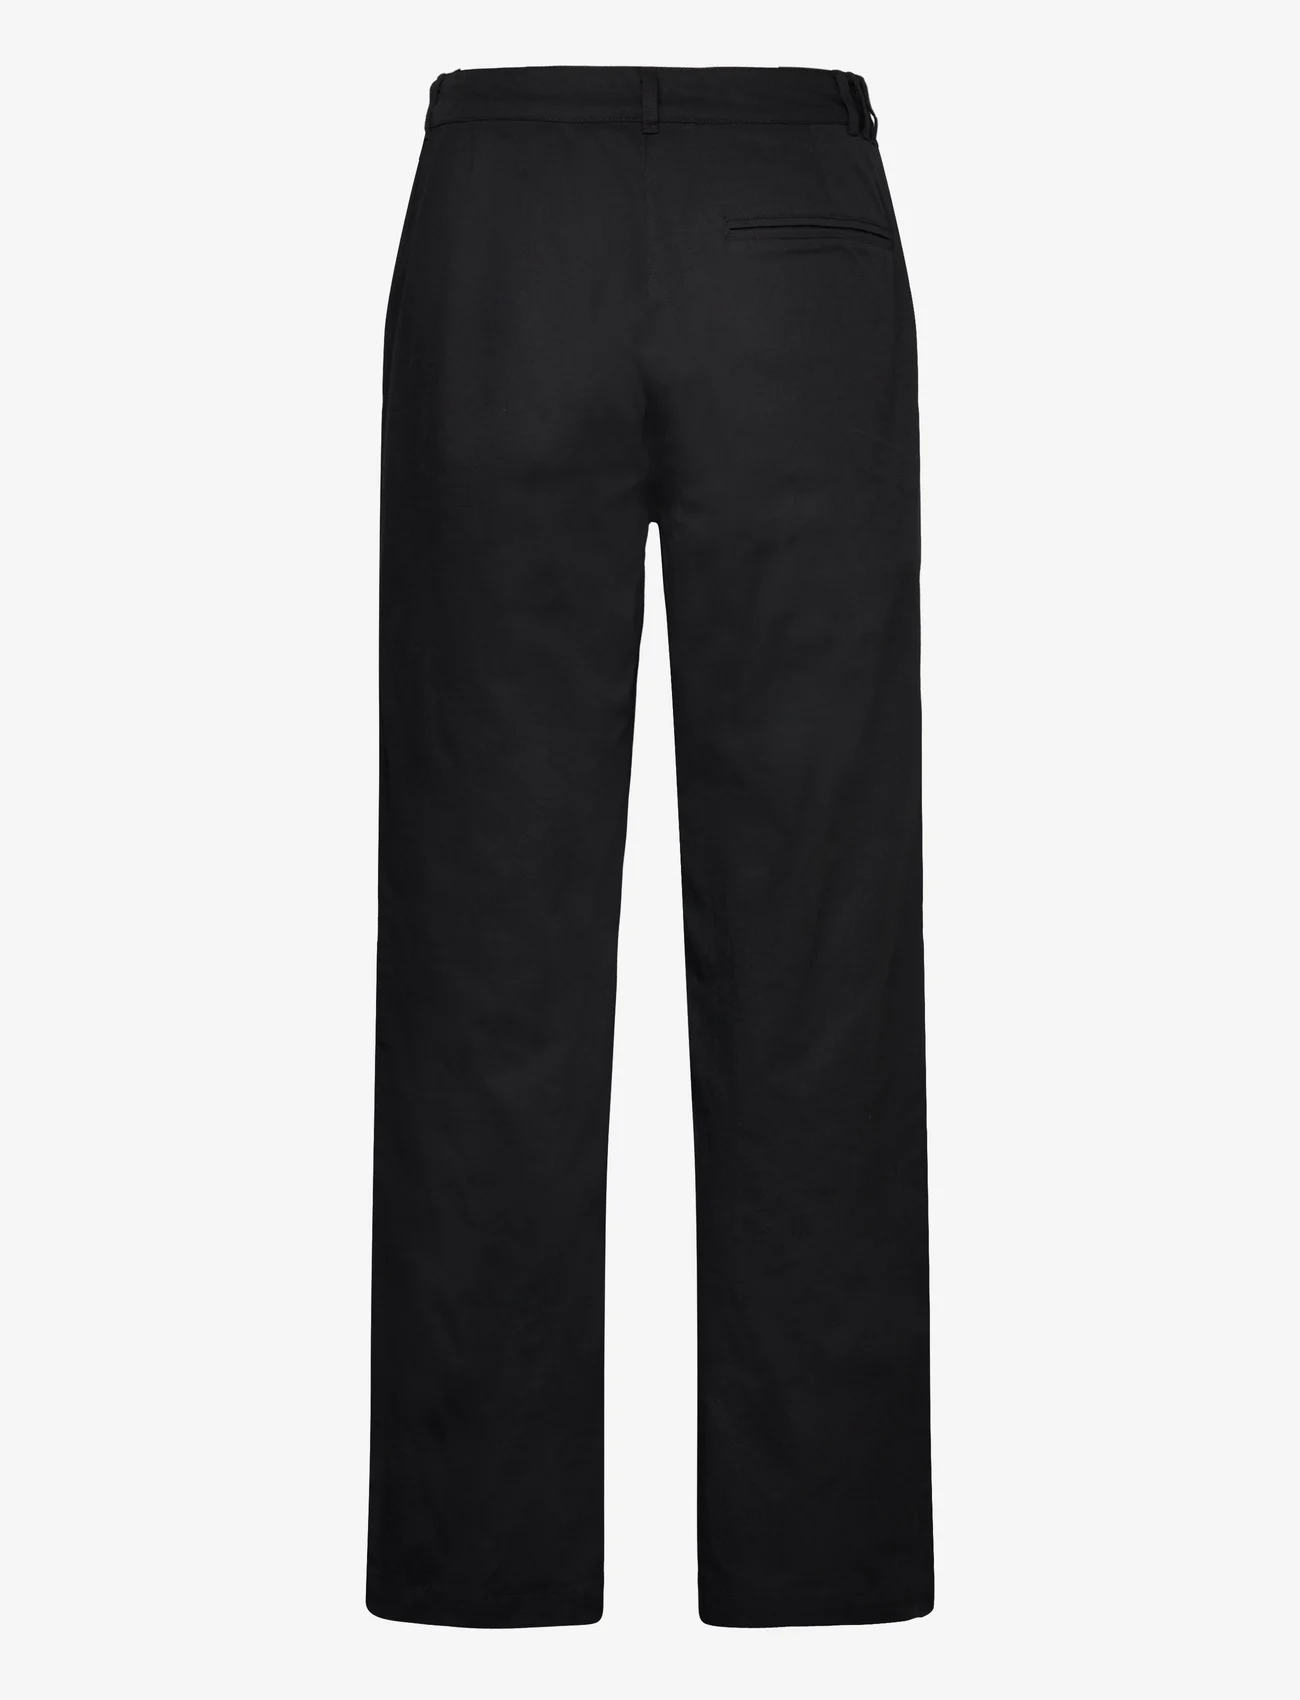 adidas Originals - CHINO PANT - sports pants - black - 1